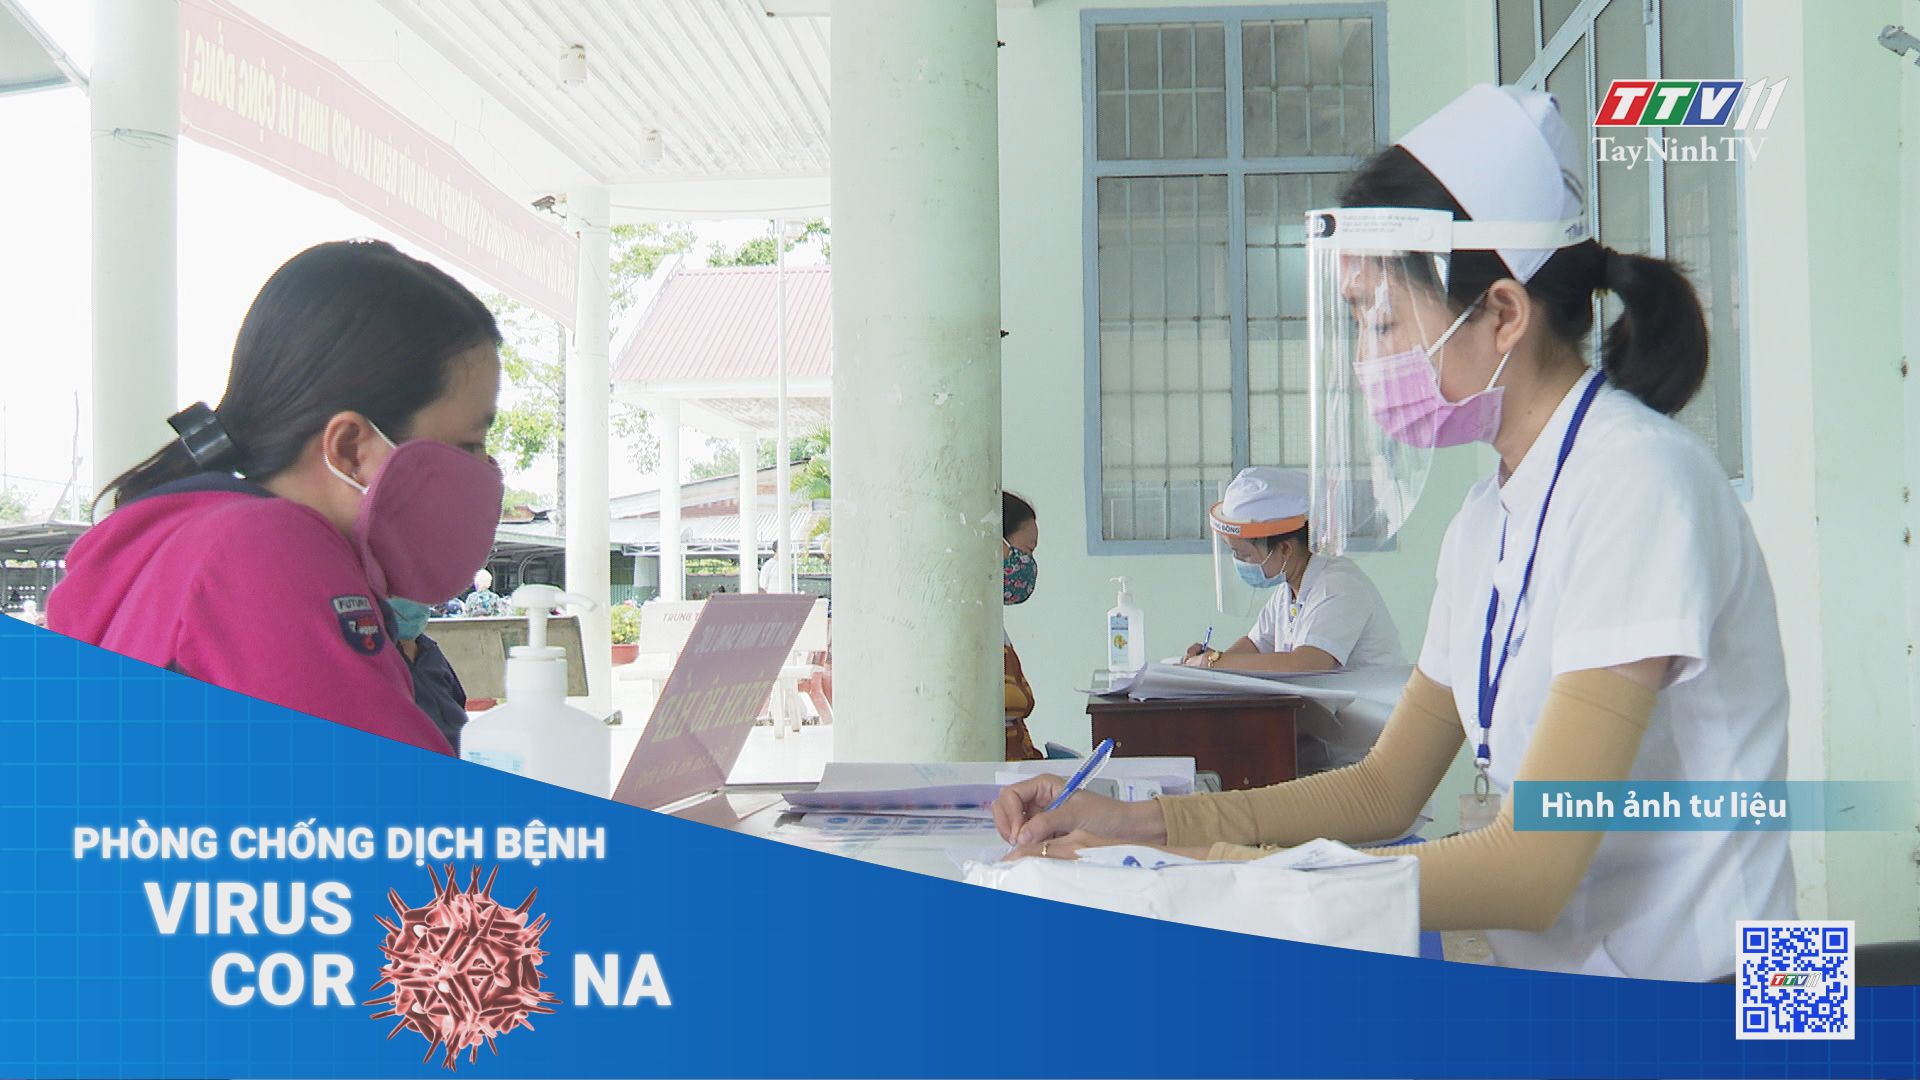 Tây Ninh thực hiện cấp bách biện pháp phòng, chống dịch Covid-19 | THÔNG TIN DỊCH CÚM COVID-19 | TayNinhTV 